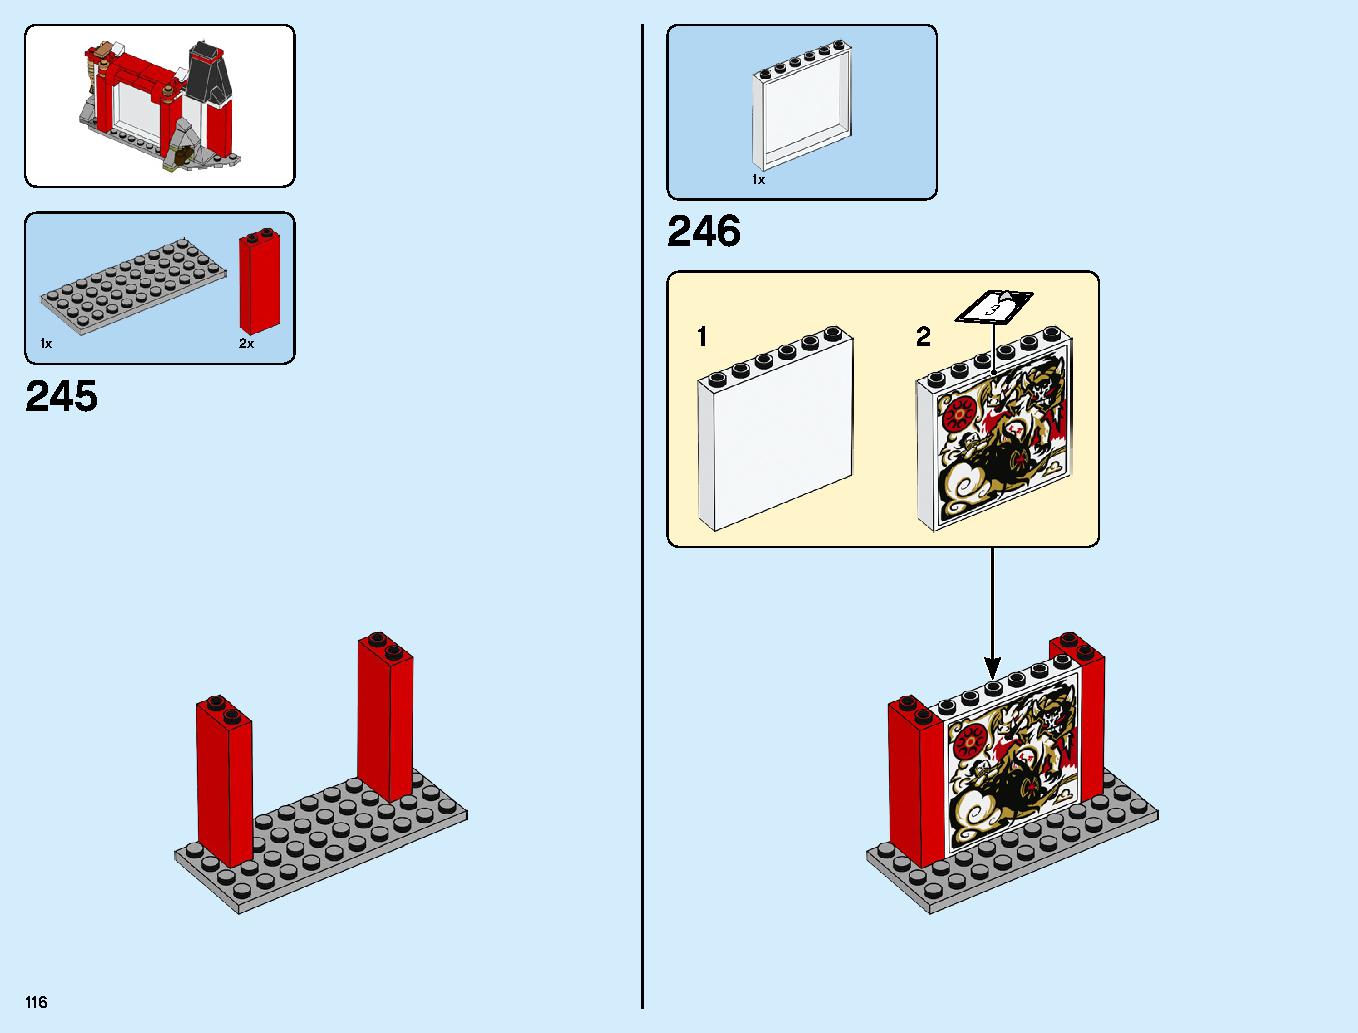 ニンジャ道場 70670 レゴの商品情報 レゴの説明書・組立方法 116 page